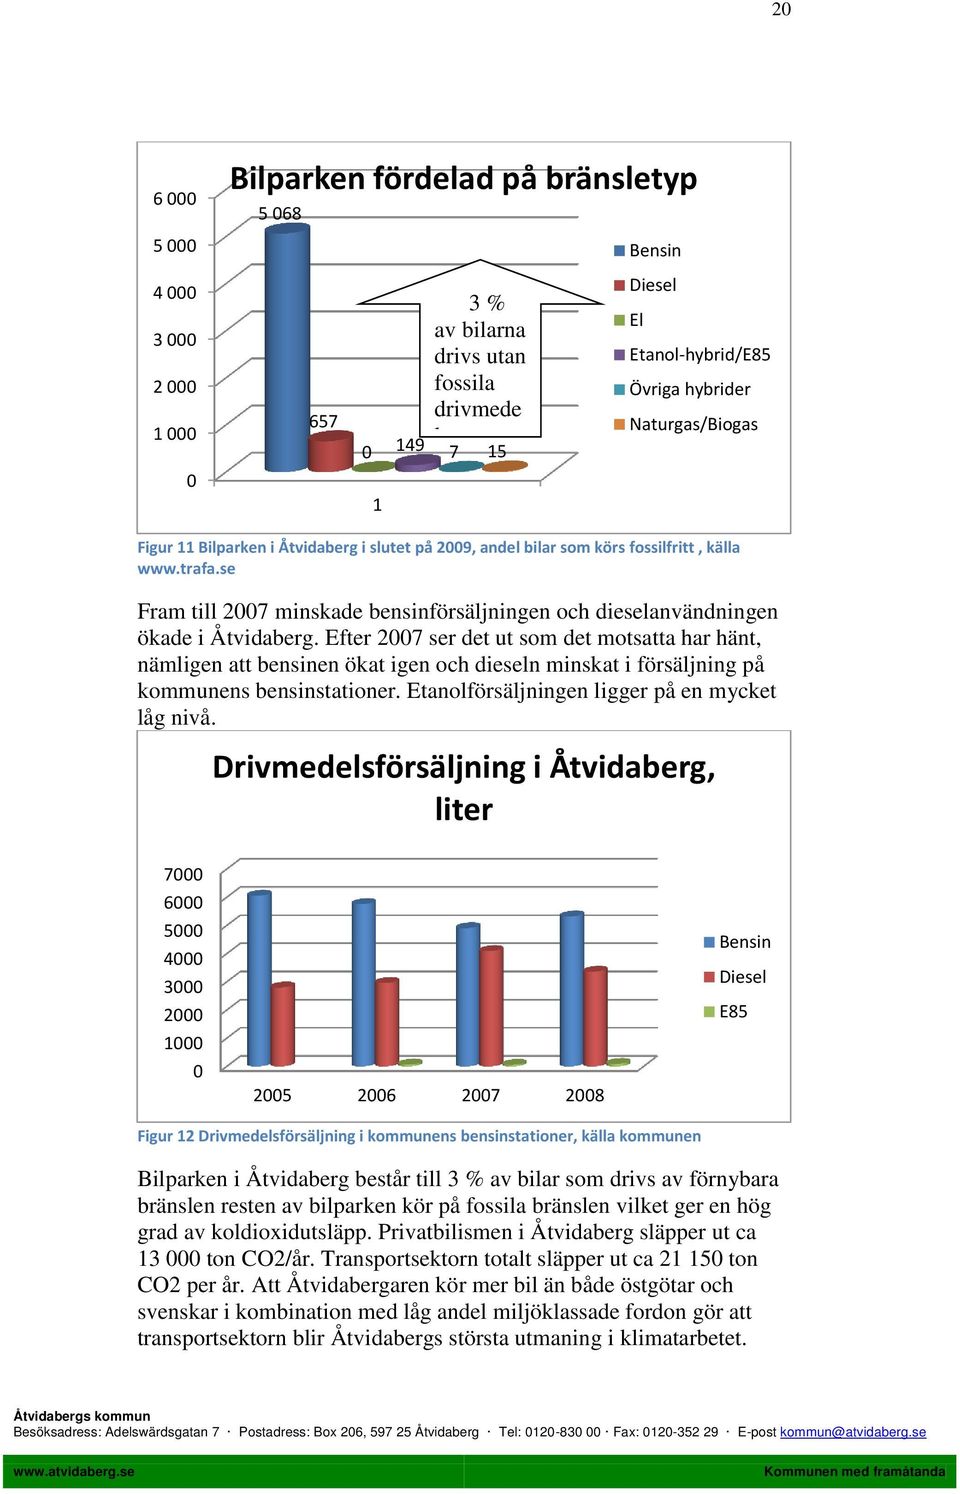 se Fram till 2007 minskade bensinförsäljningen och dieselanvändningen ökade i Åtvidaberg.